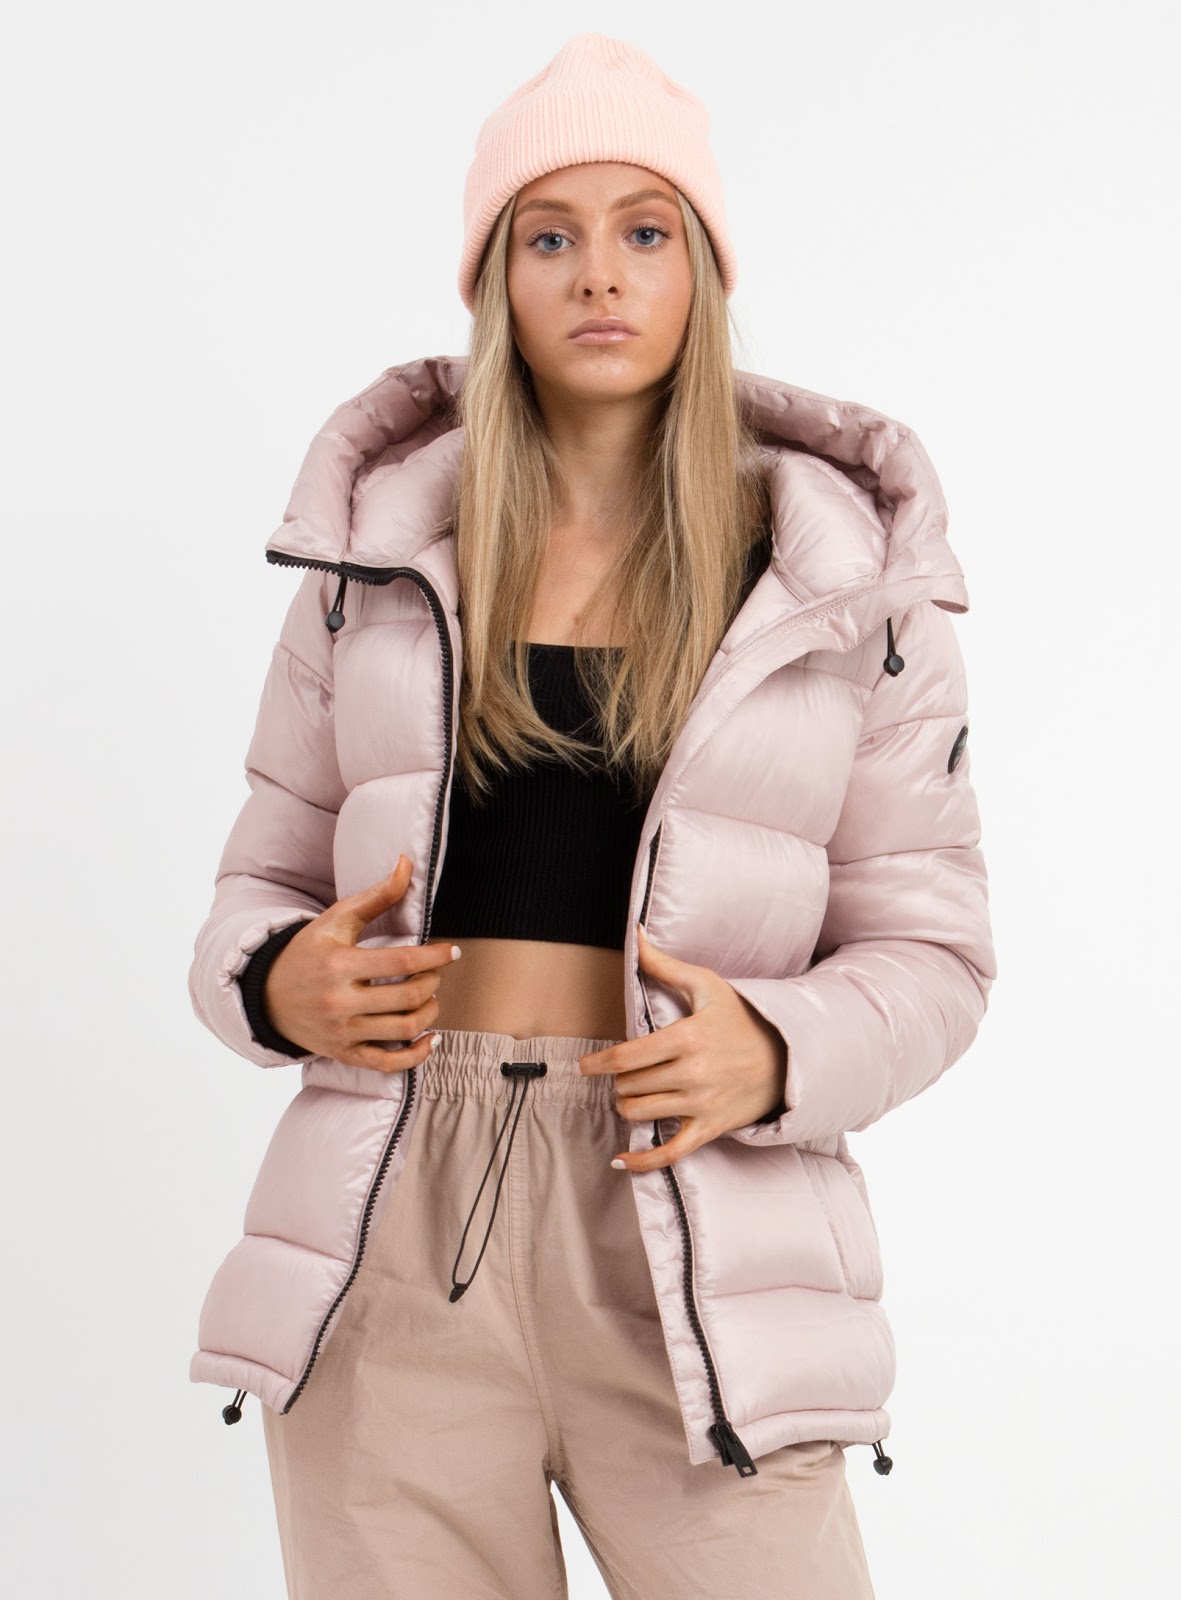 Tendencias de moda otoño/invierno 2020: chaquetas impermeables